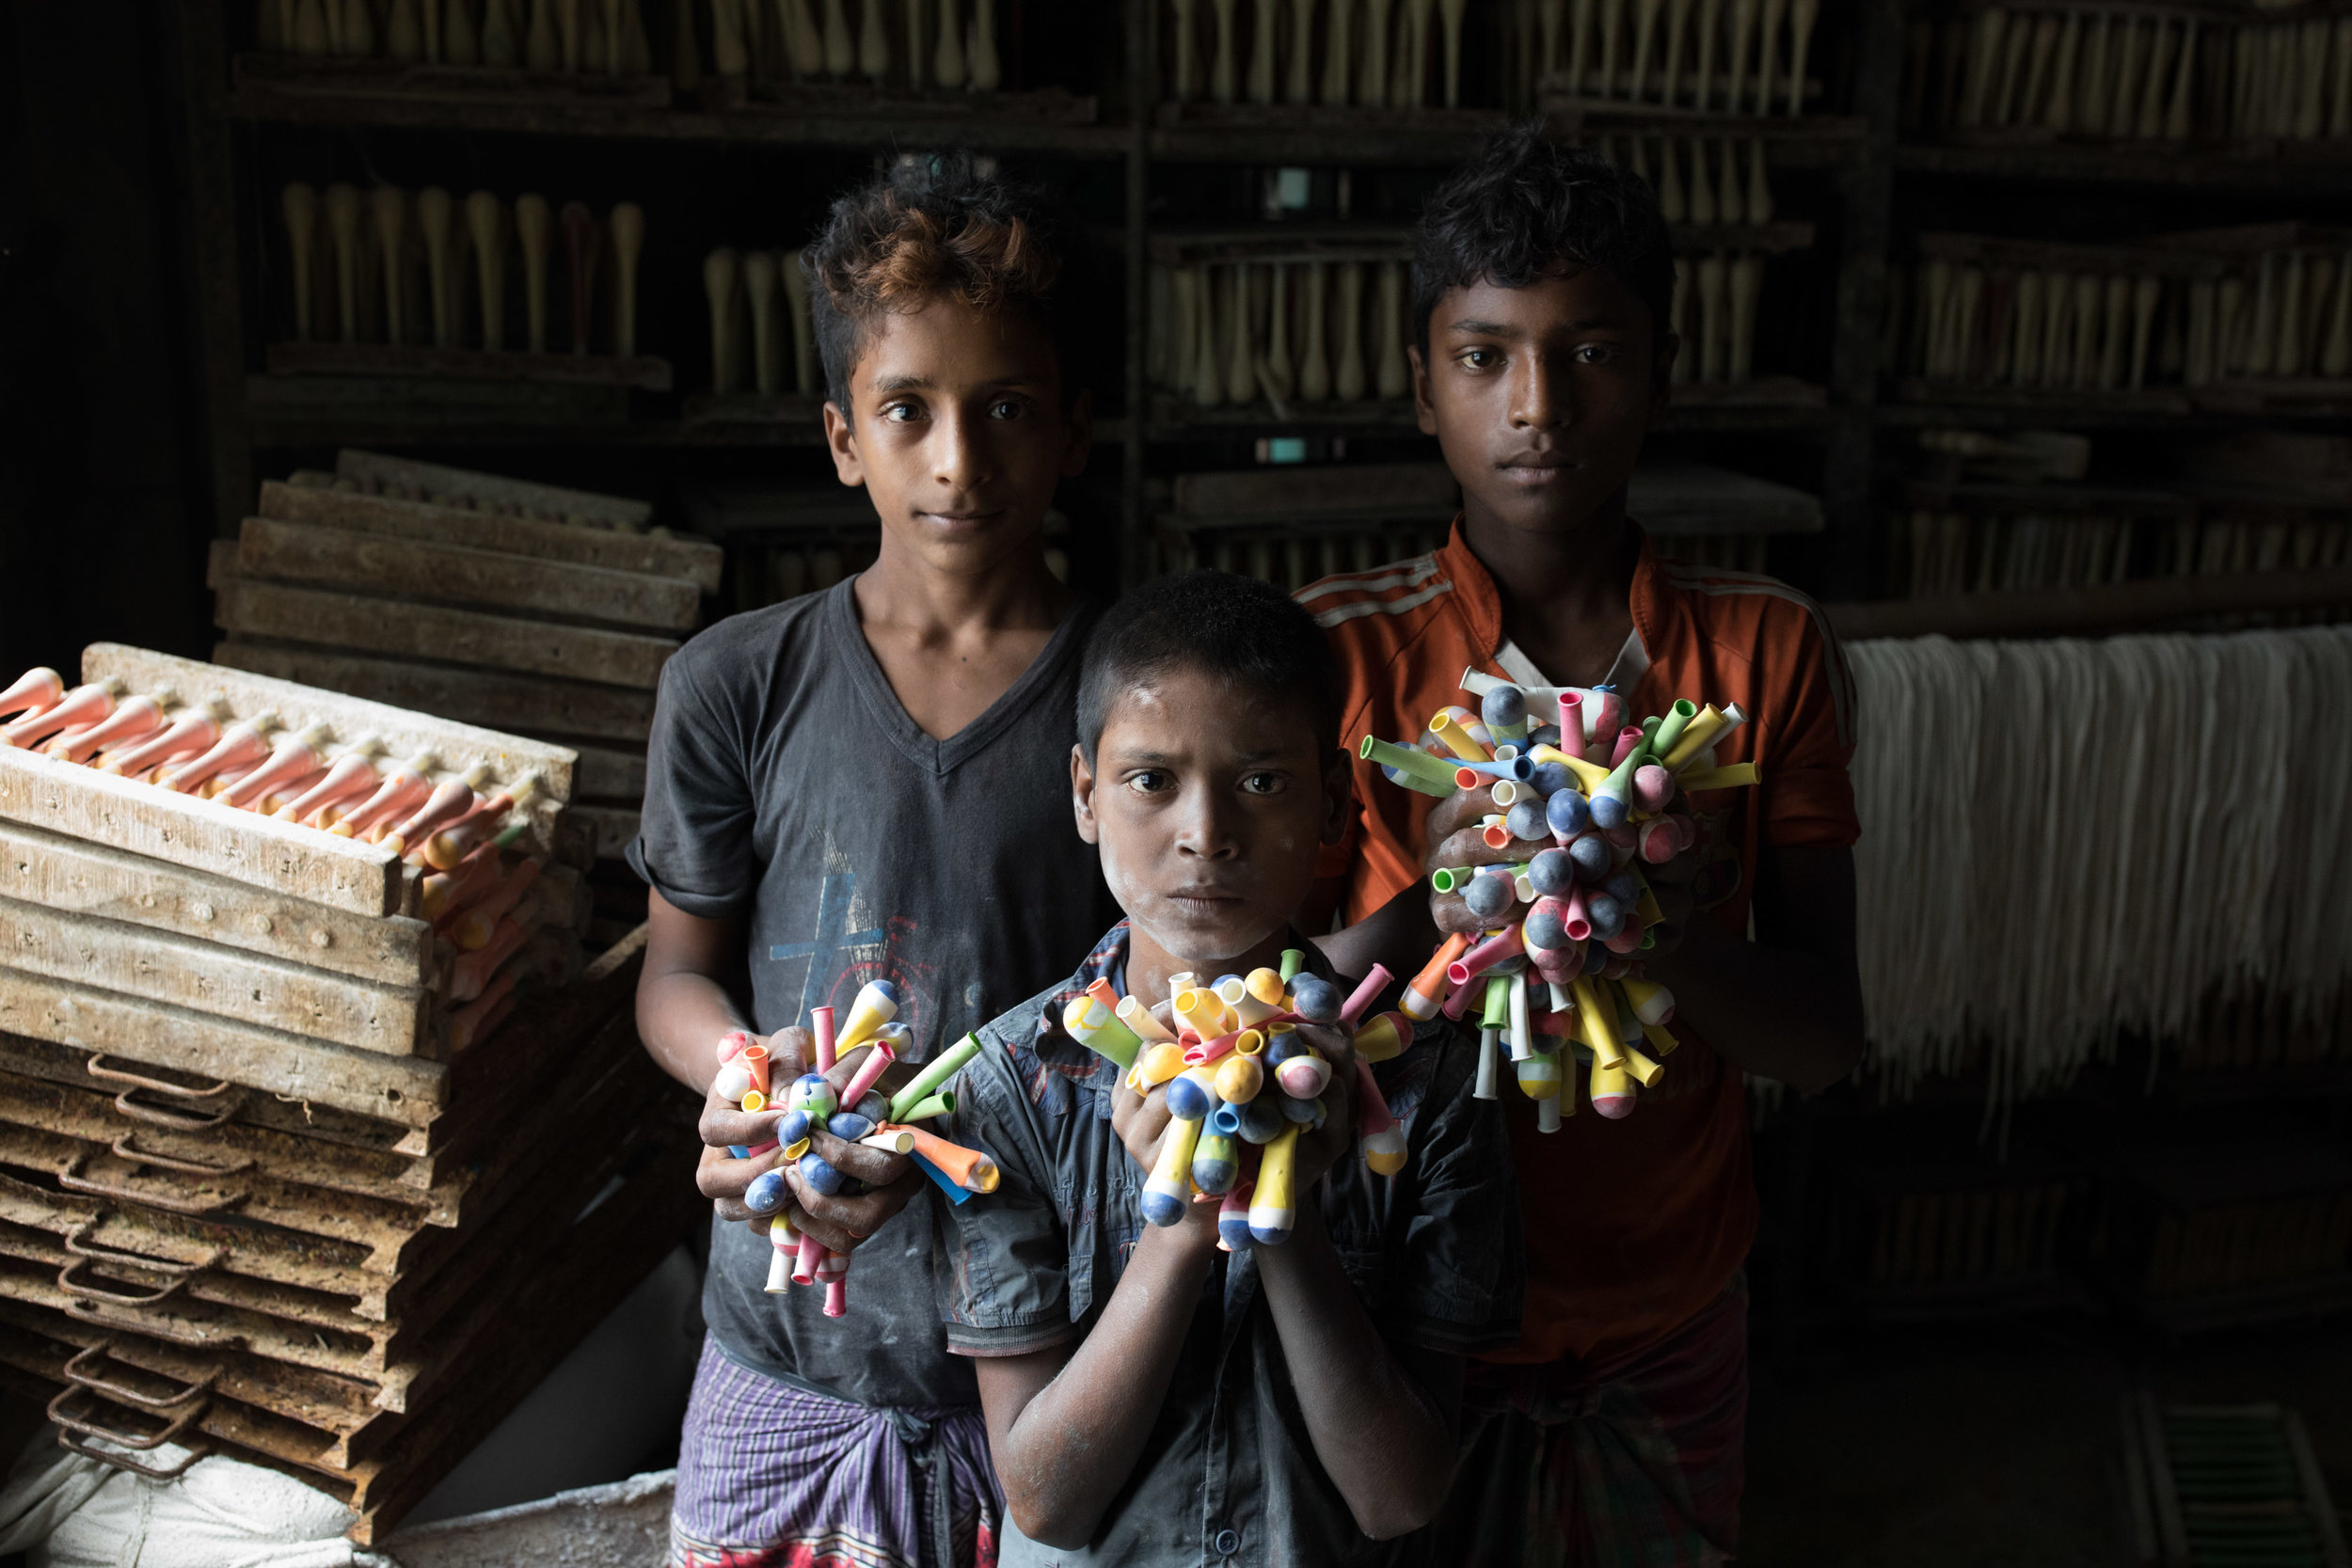 Fotografia de crianças em Bangladesh, do fotógrafo Simon Lister para UNICEF história contada na 3ª temporada da série documentário Tales by Light em um episódio sobre trabalho infantil